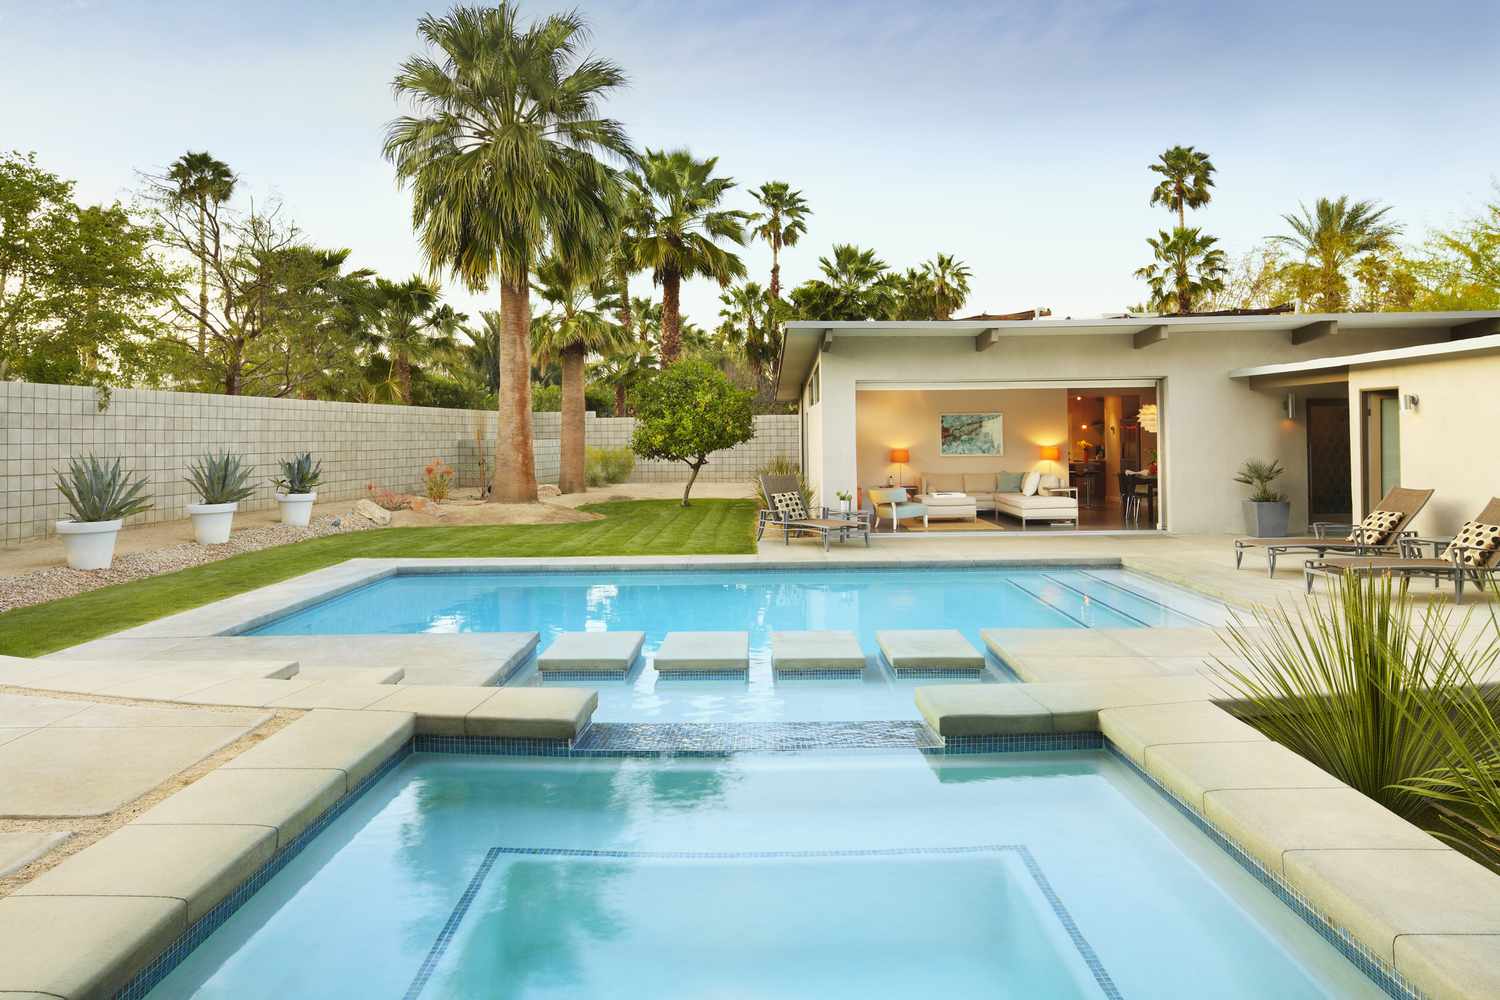 Una piscina de inmersión rodeada de palmeras y muebles de patio.